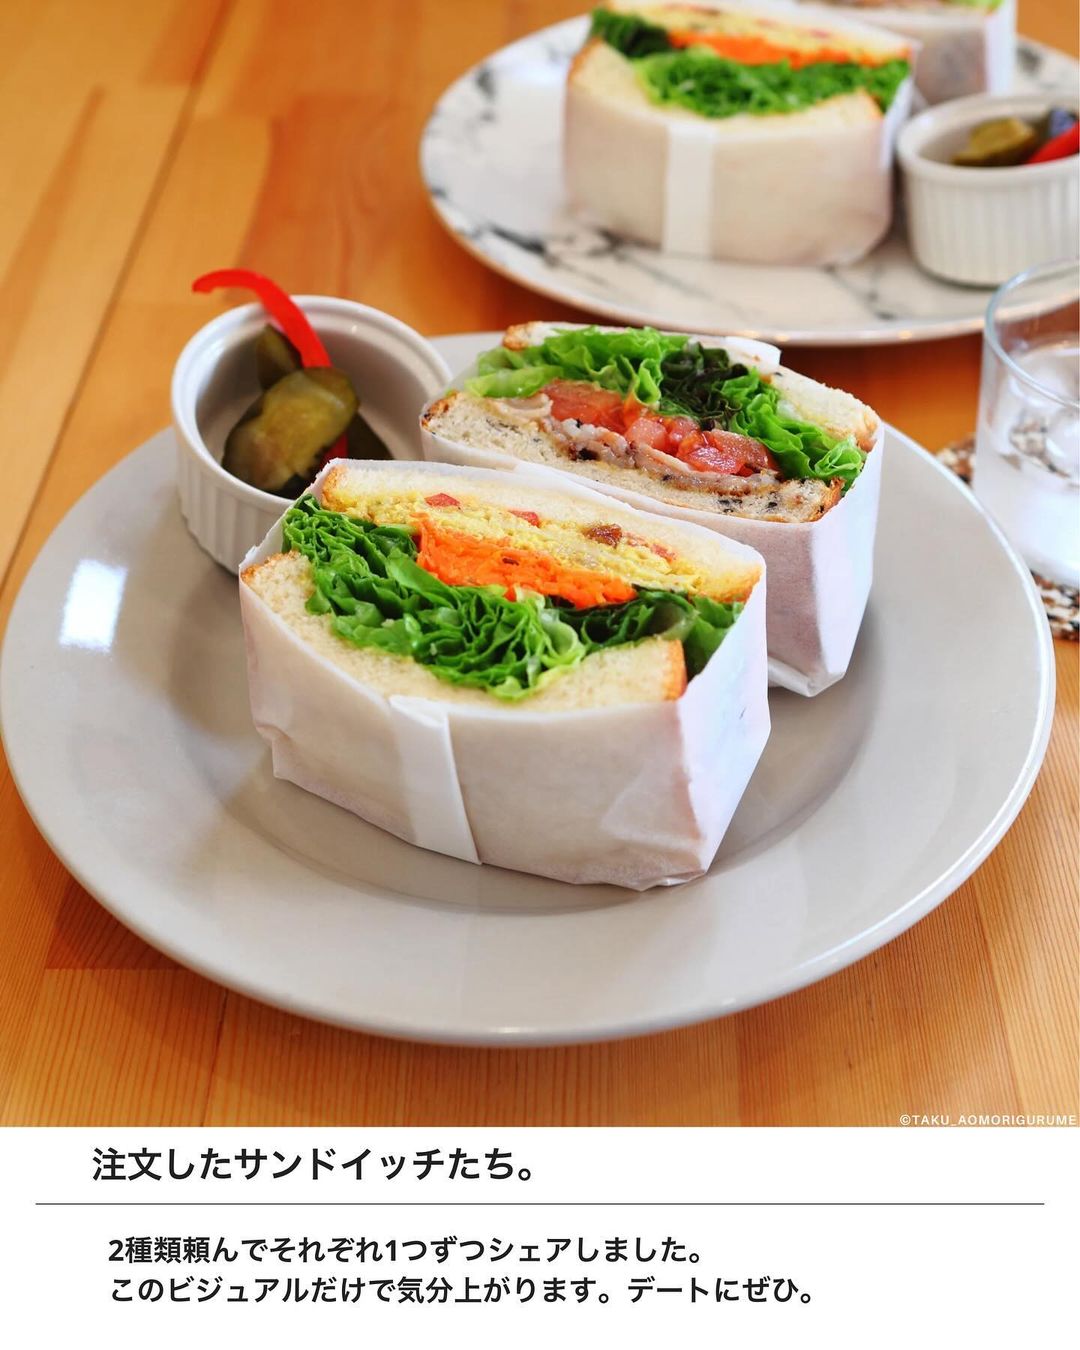 【青森市・ハンドサンドイッチズ】自家製ベーコンサンドイッチとカレーチキンサンドイッチ